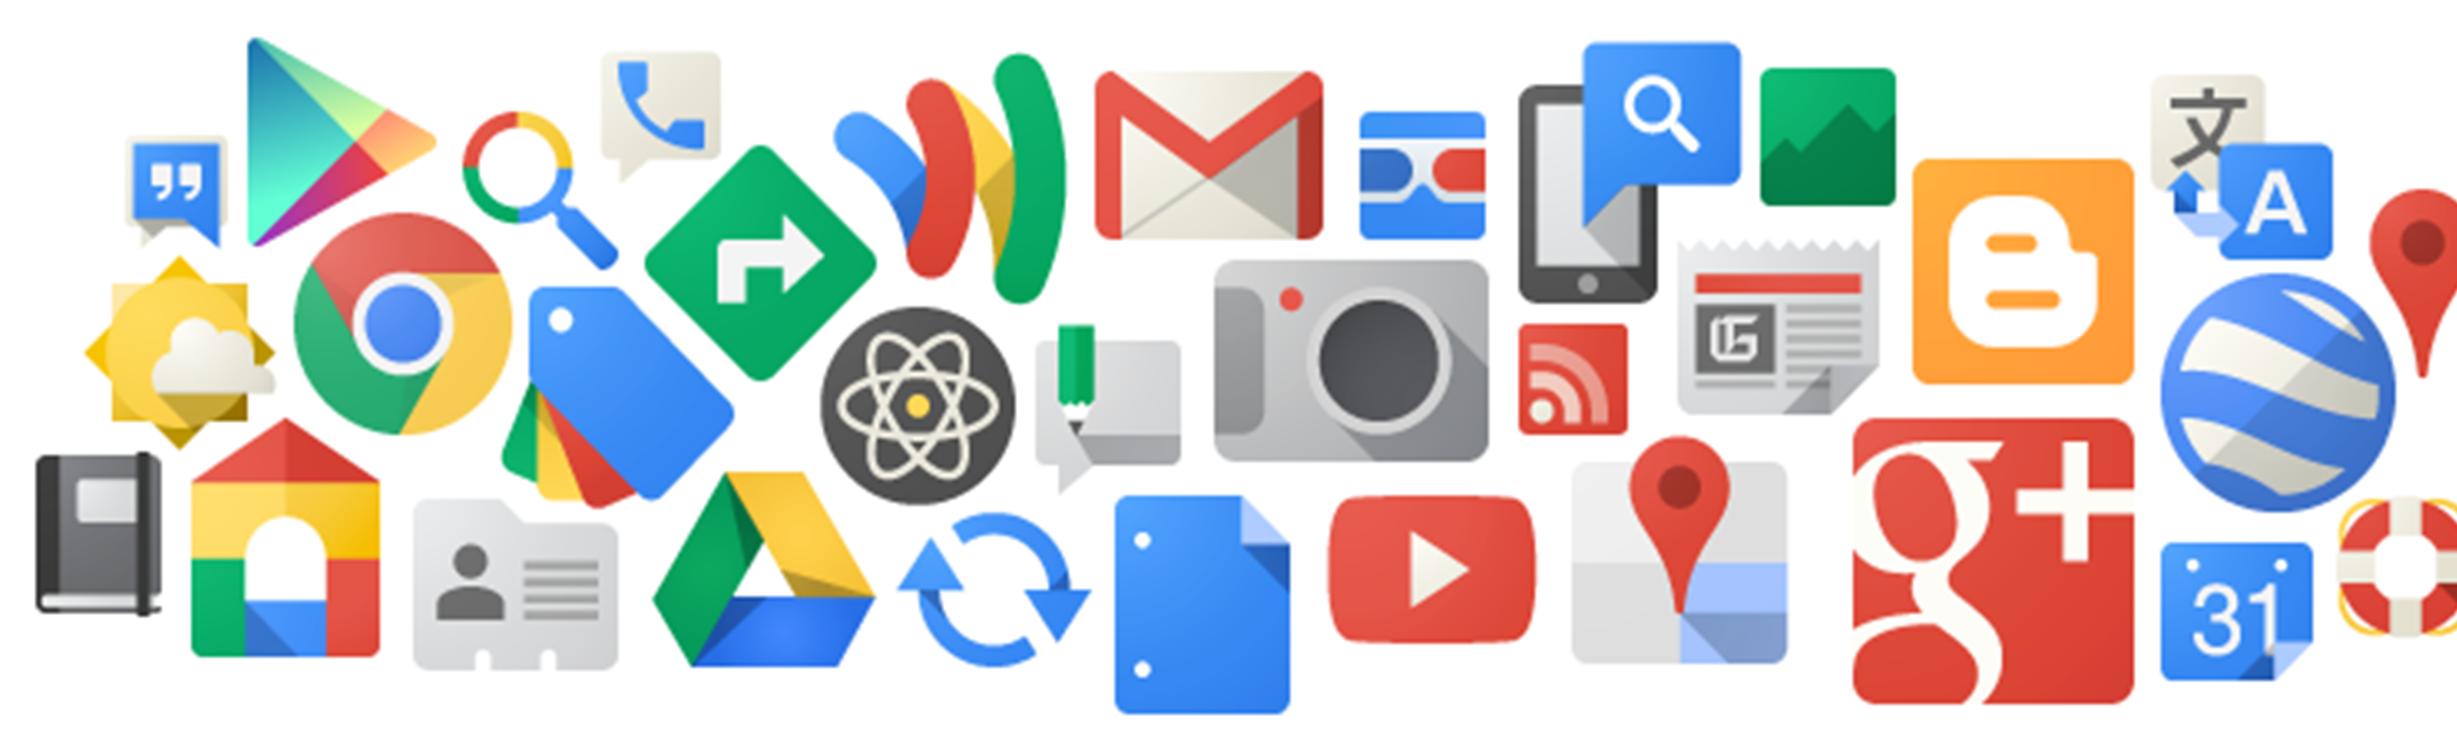 Sete aplicativos do Google que você provavelmente não conhece!!!